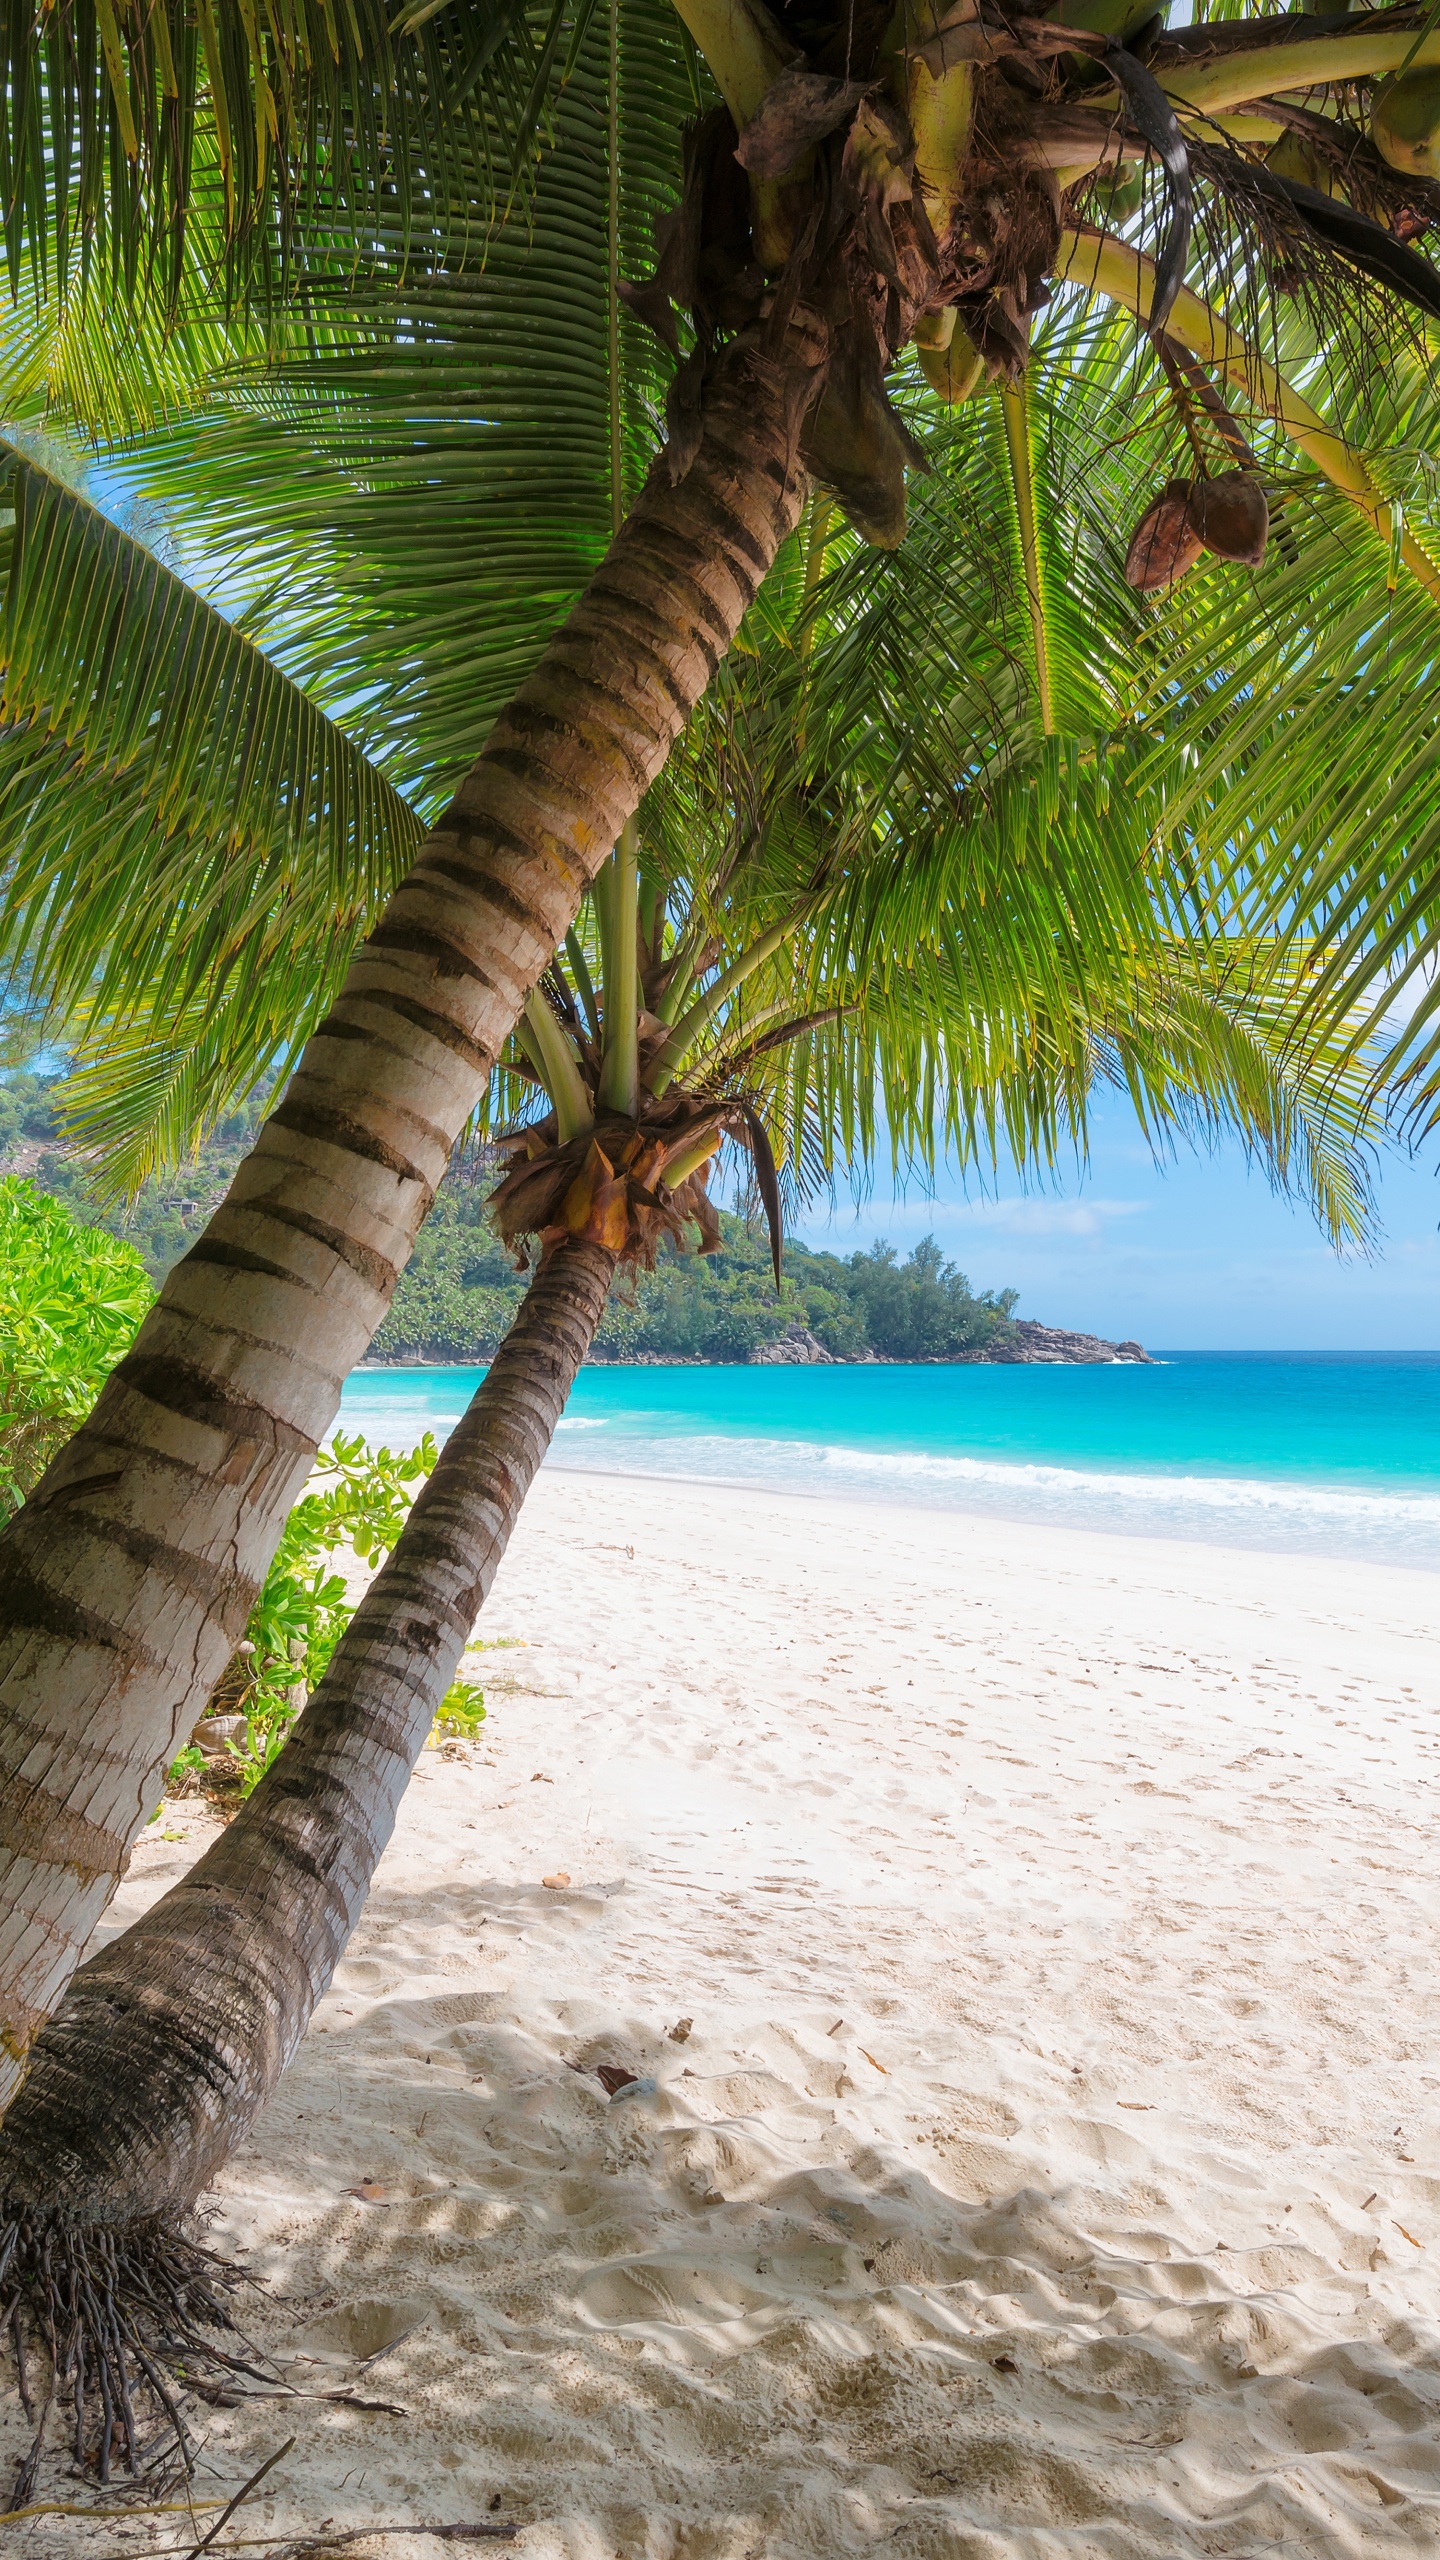 岸边, 热带地区, 加勒比, 度假, 度假村 壁纸 1440x2560 允许